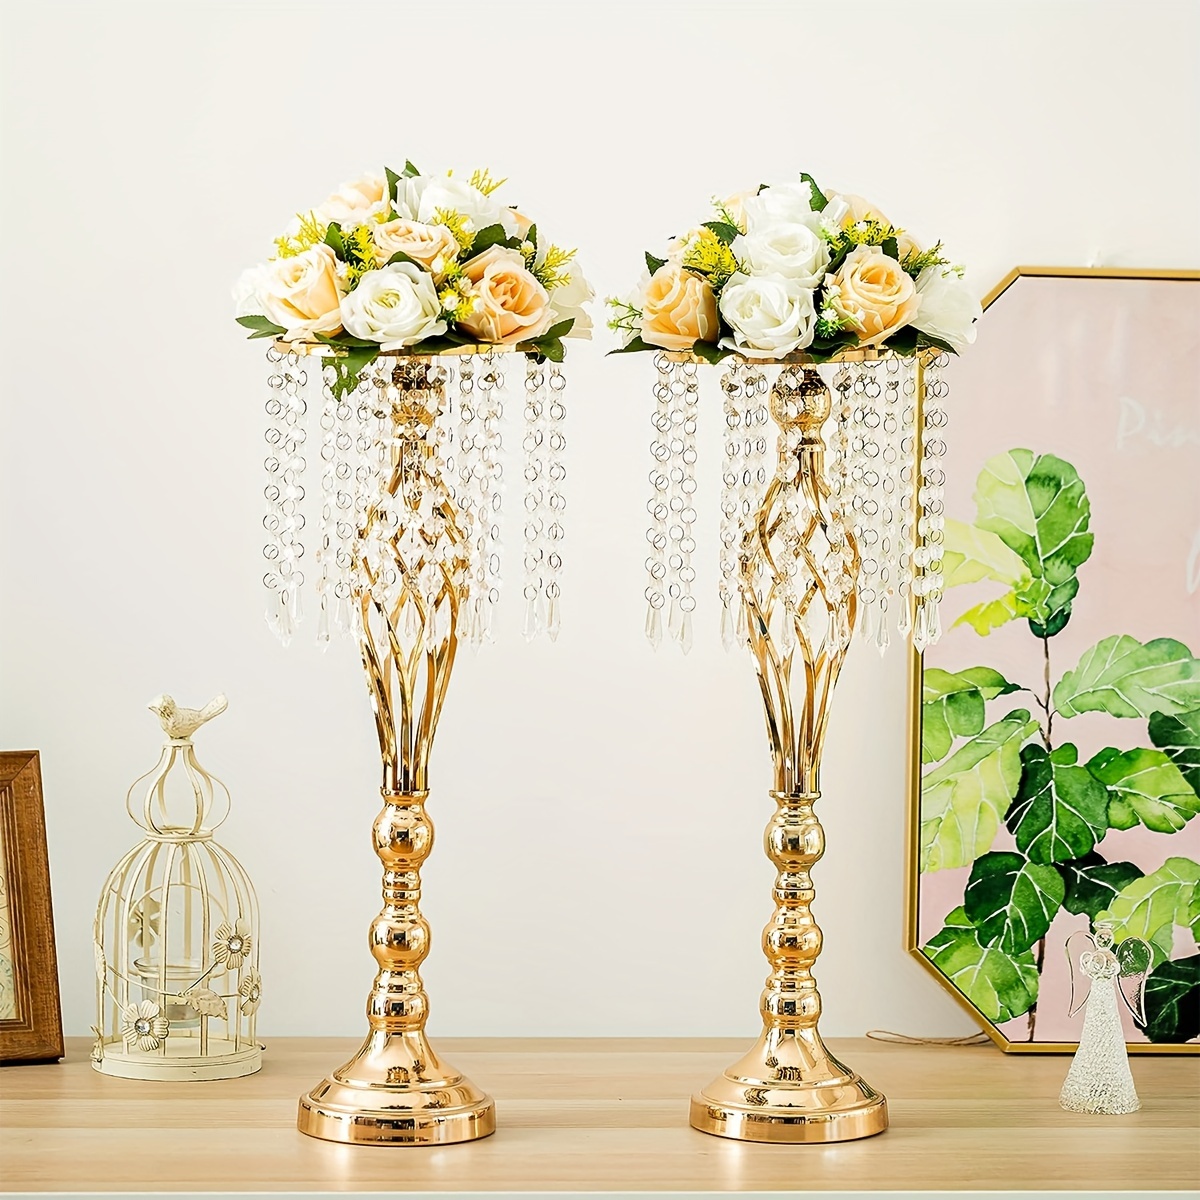 1個、フラワースタンド金属花瓶、結婚式のテーブルセンターピース、小さなテーブルセンターピース、結婚記念日、披露宴、お祝いフラワーアレンジメント、ダイニングテーブル、西洋クラシックホームデコレーション用。